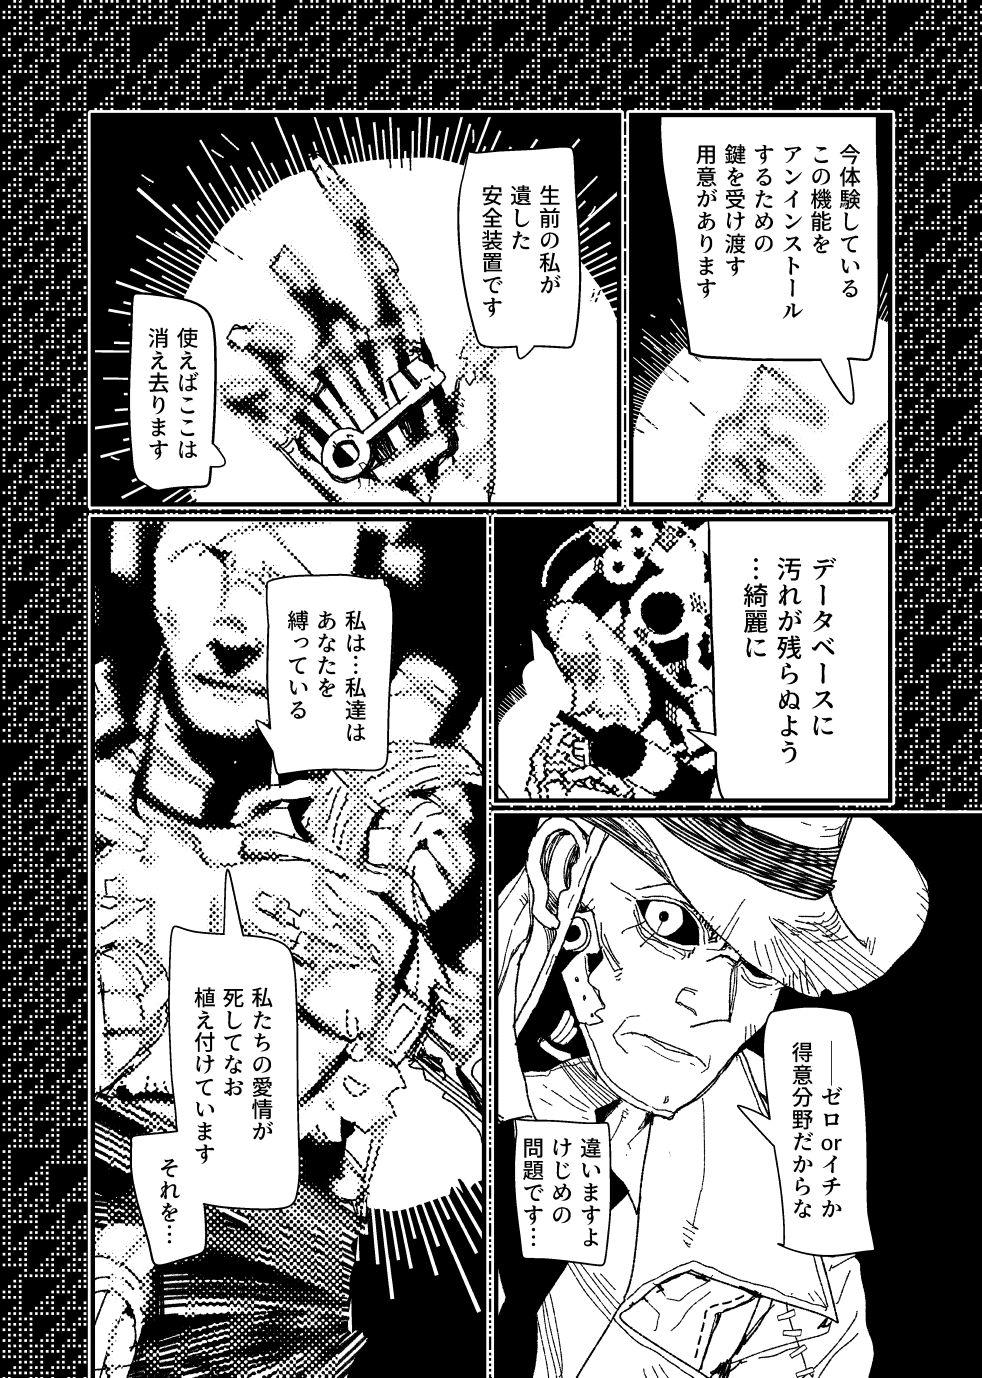 [Tanokura] FO4 [R18] Dimaniku Manga 23